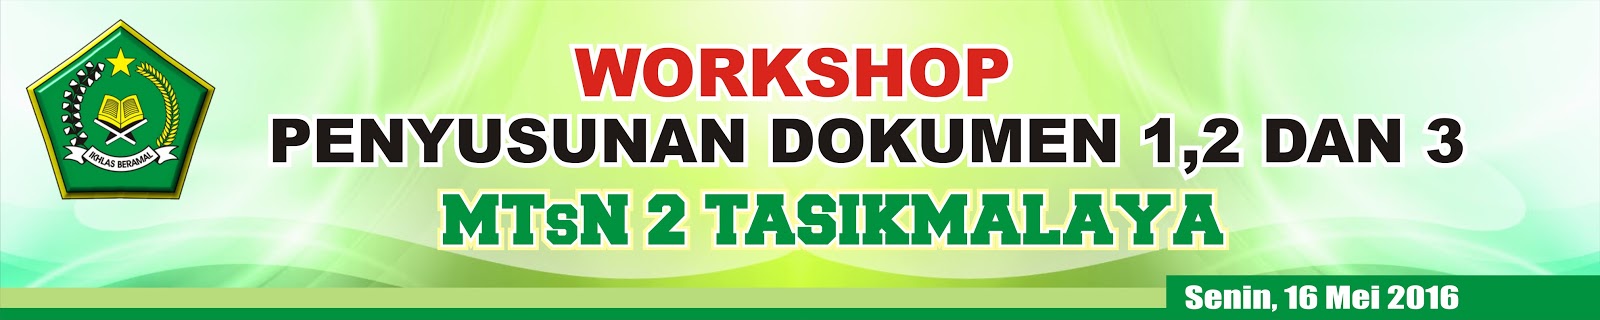 Download Contoh Spanduk Workshop.cdr  KARYAKU